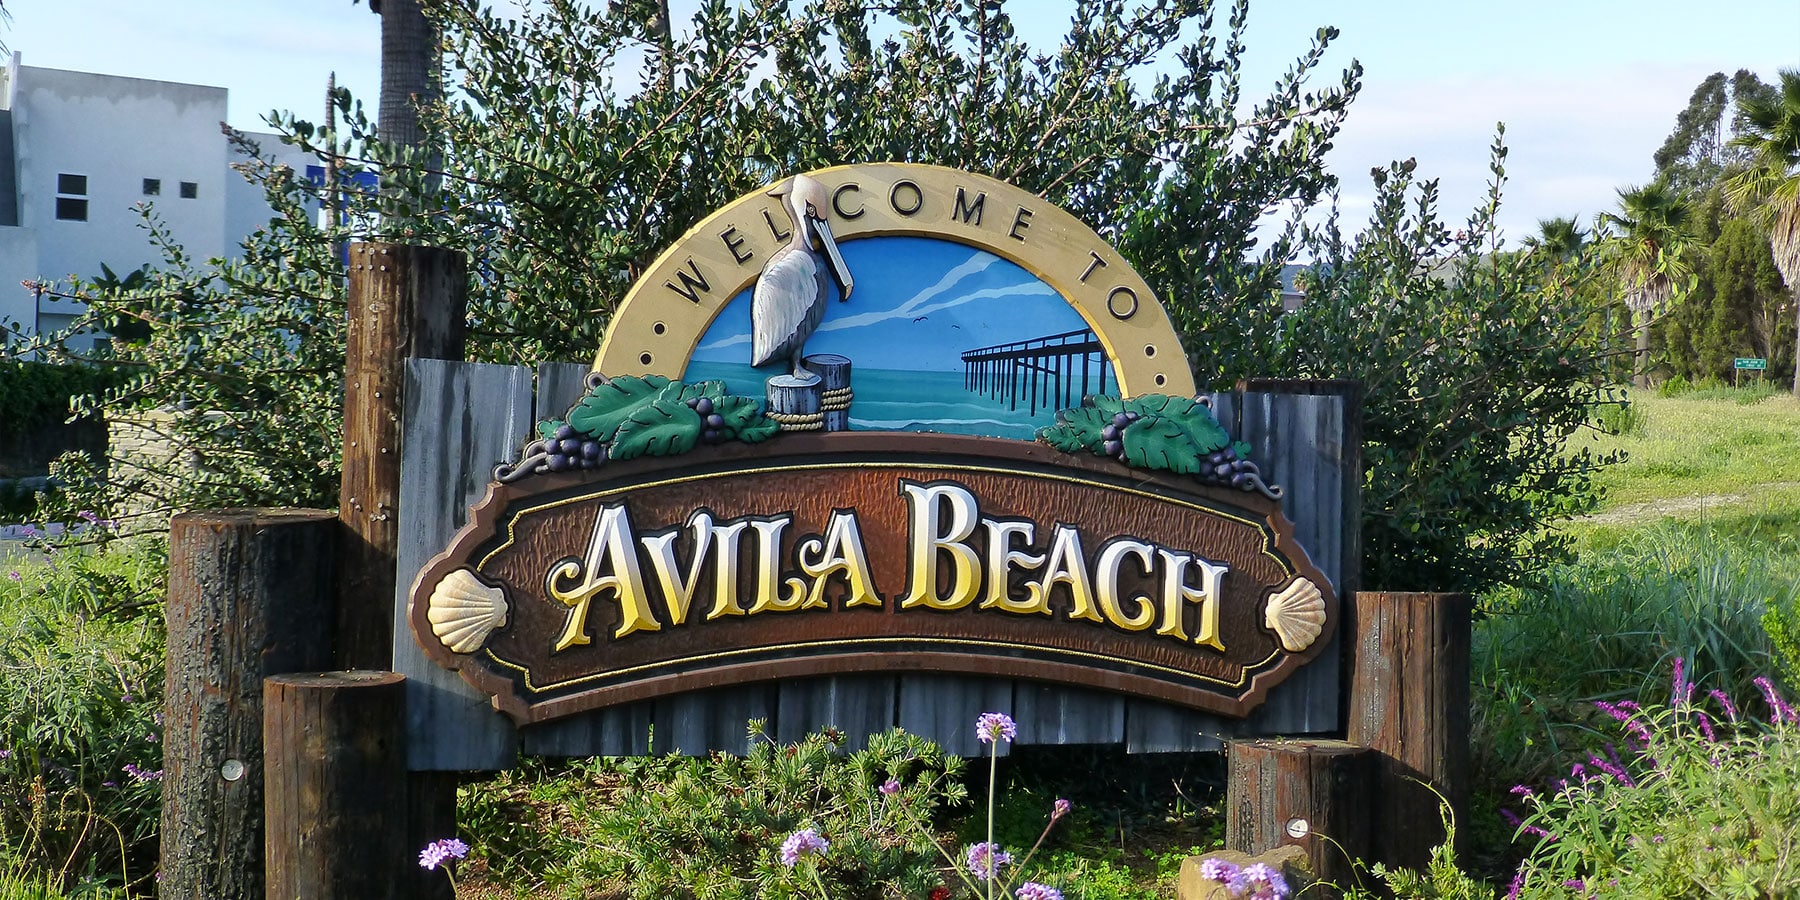 Avila Beach